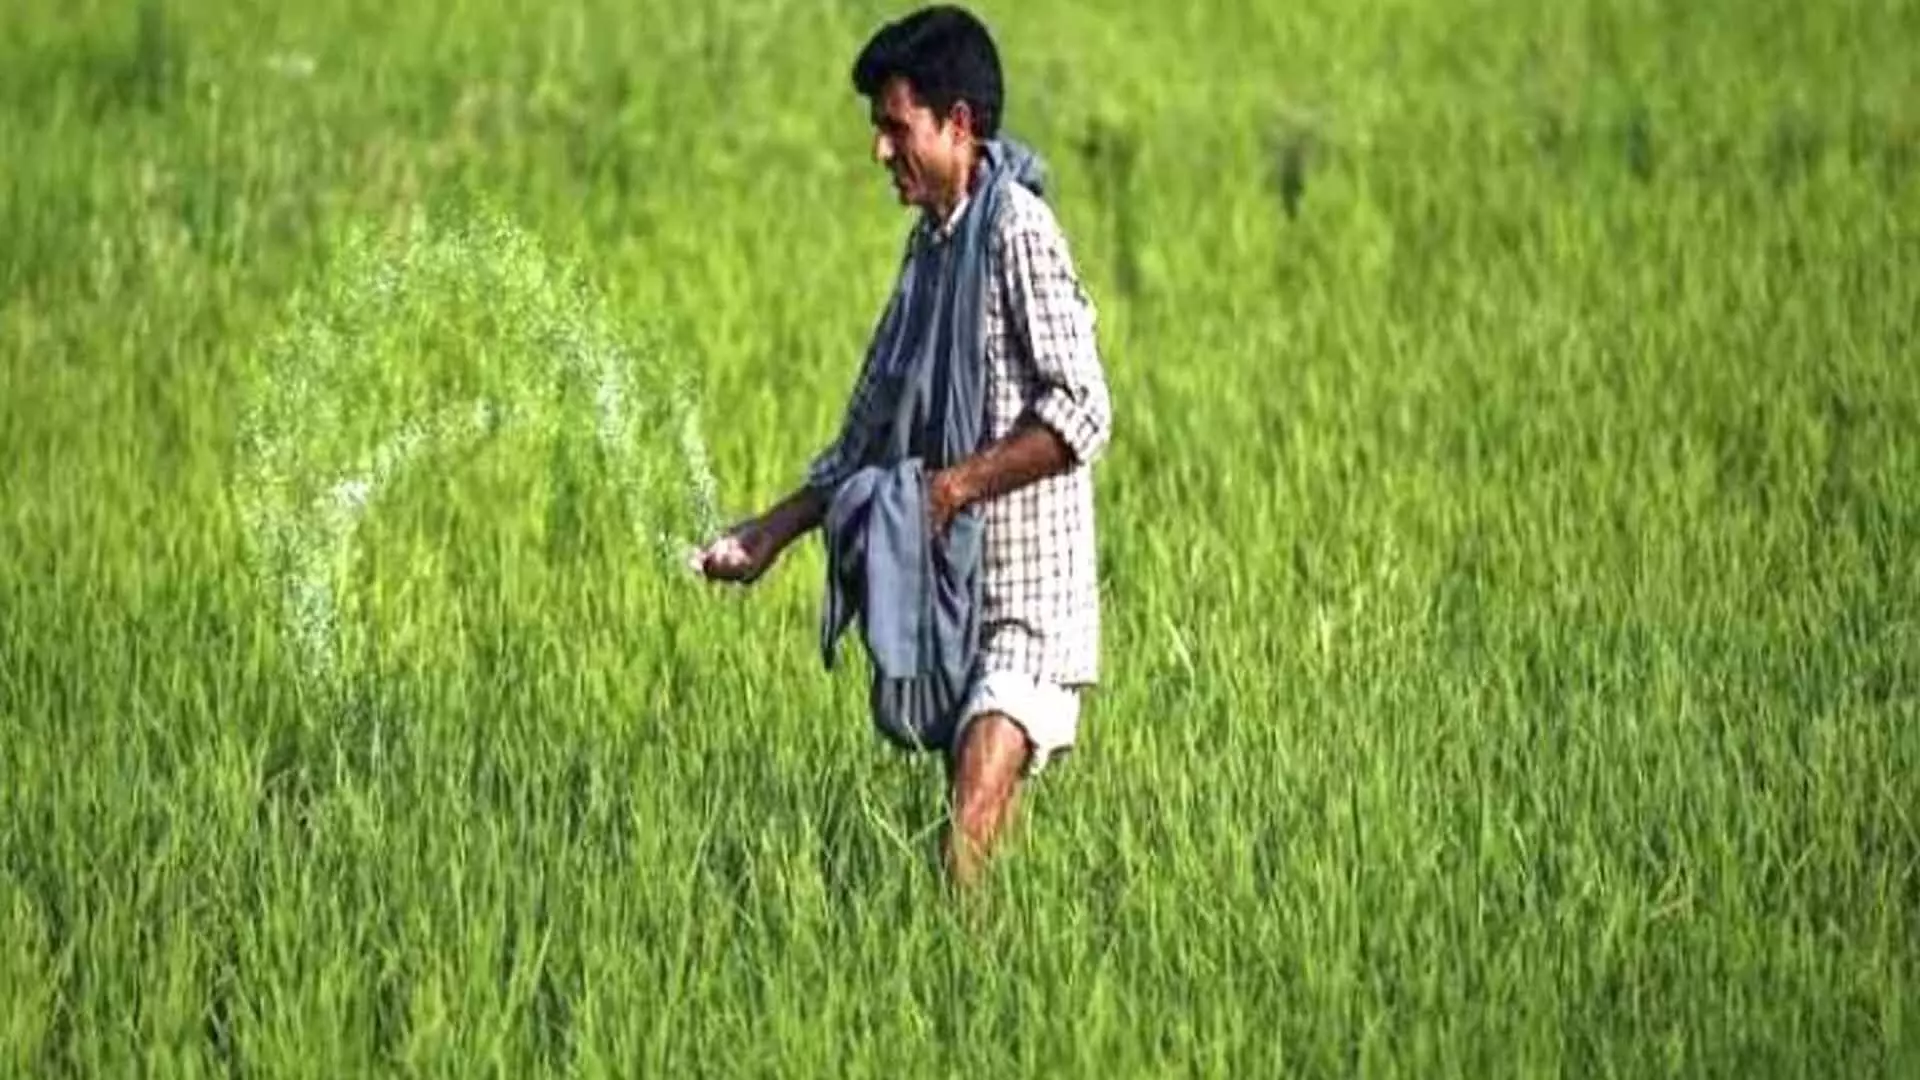 Delhi News: आर्थिक सर्वेक्षण में कृषि सुधारों पर तत्काल जोर, विकास में आने वाली बाधाओं का हवाला